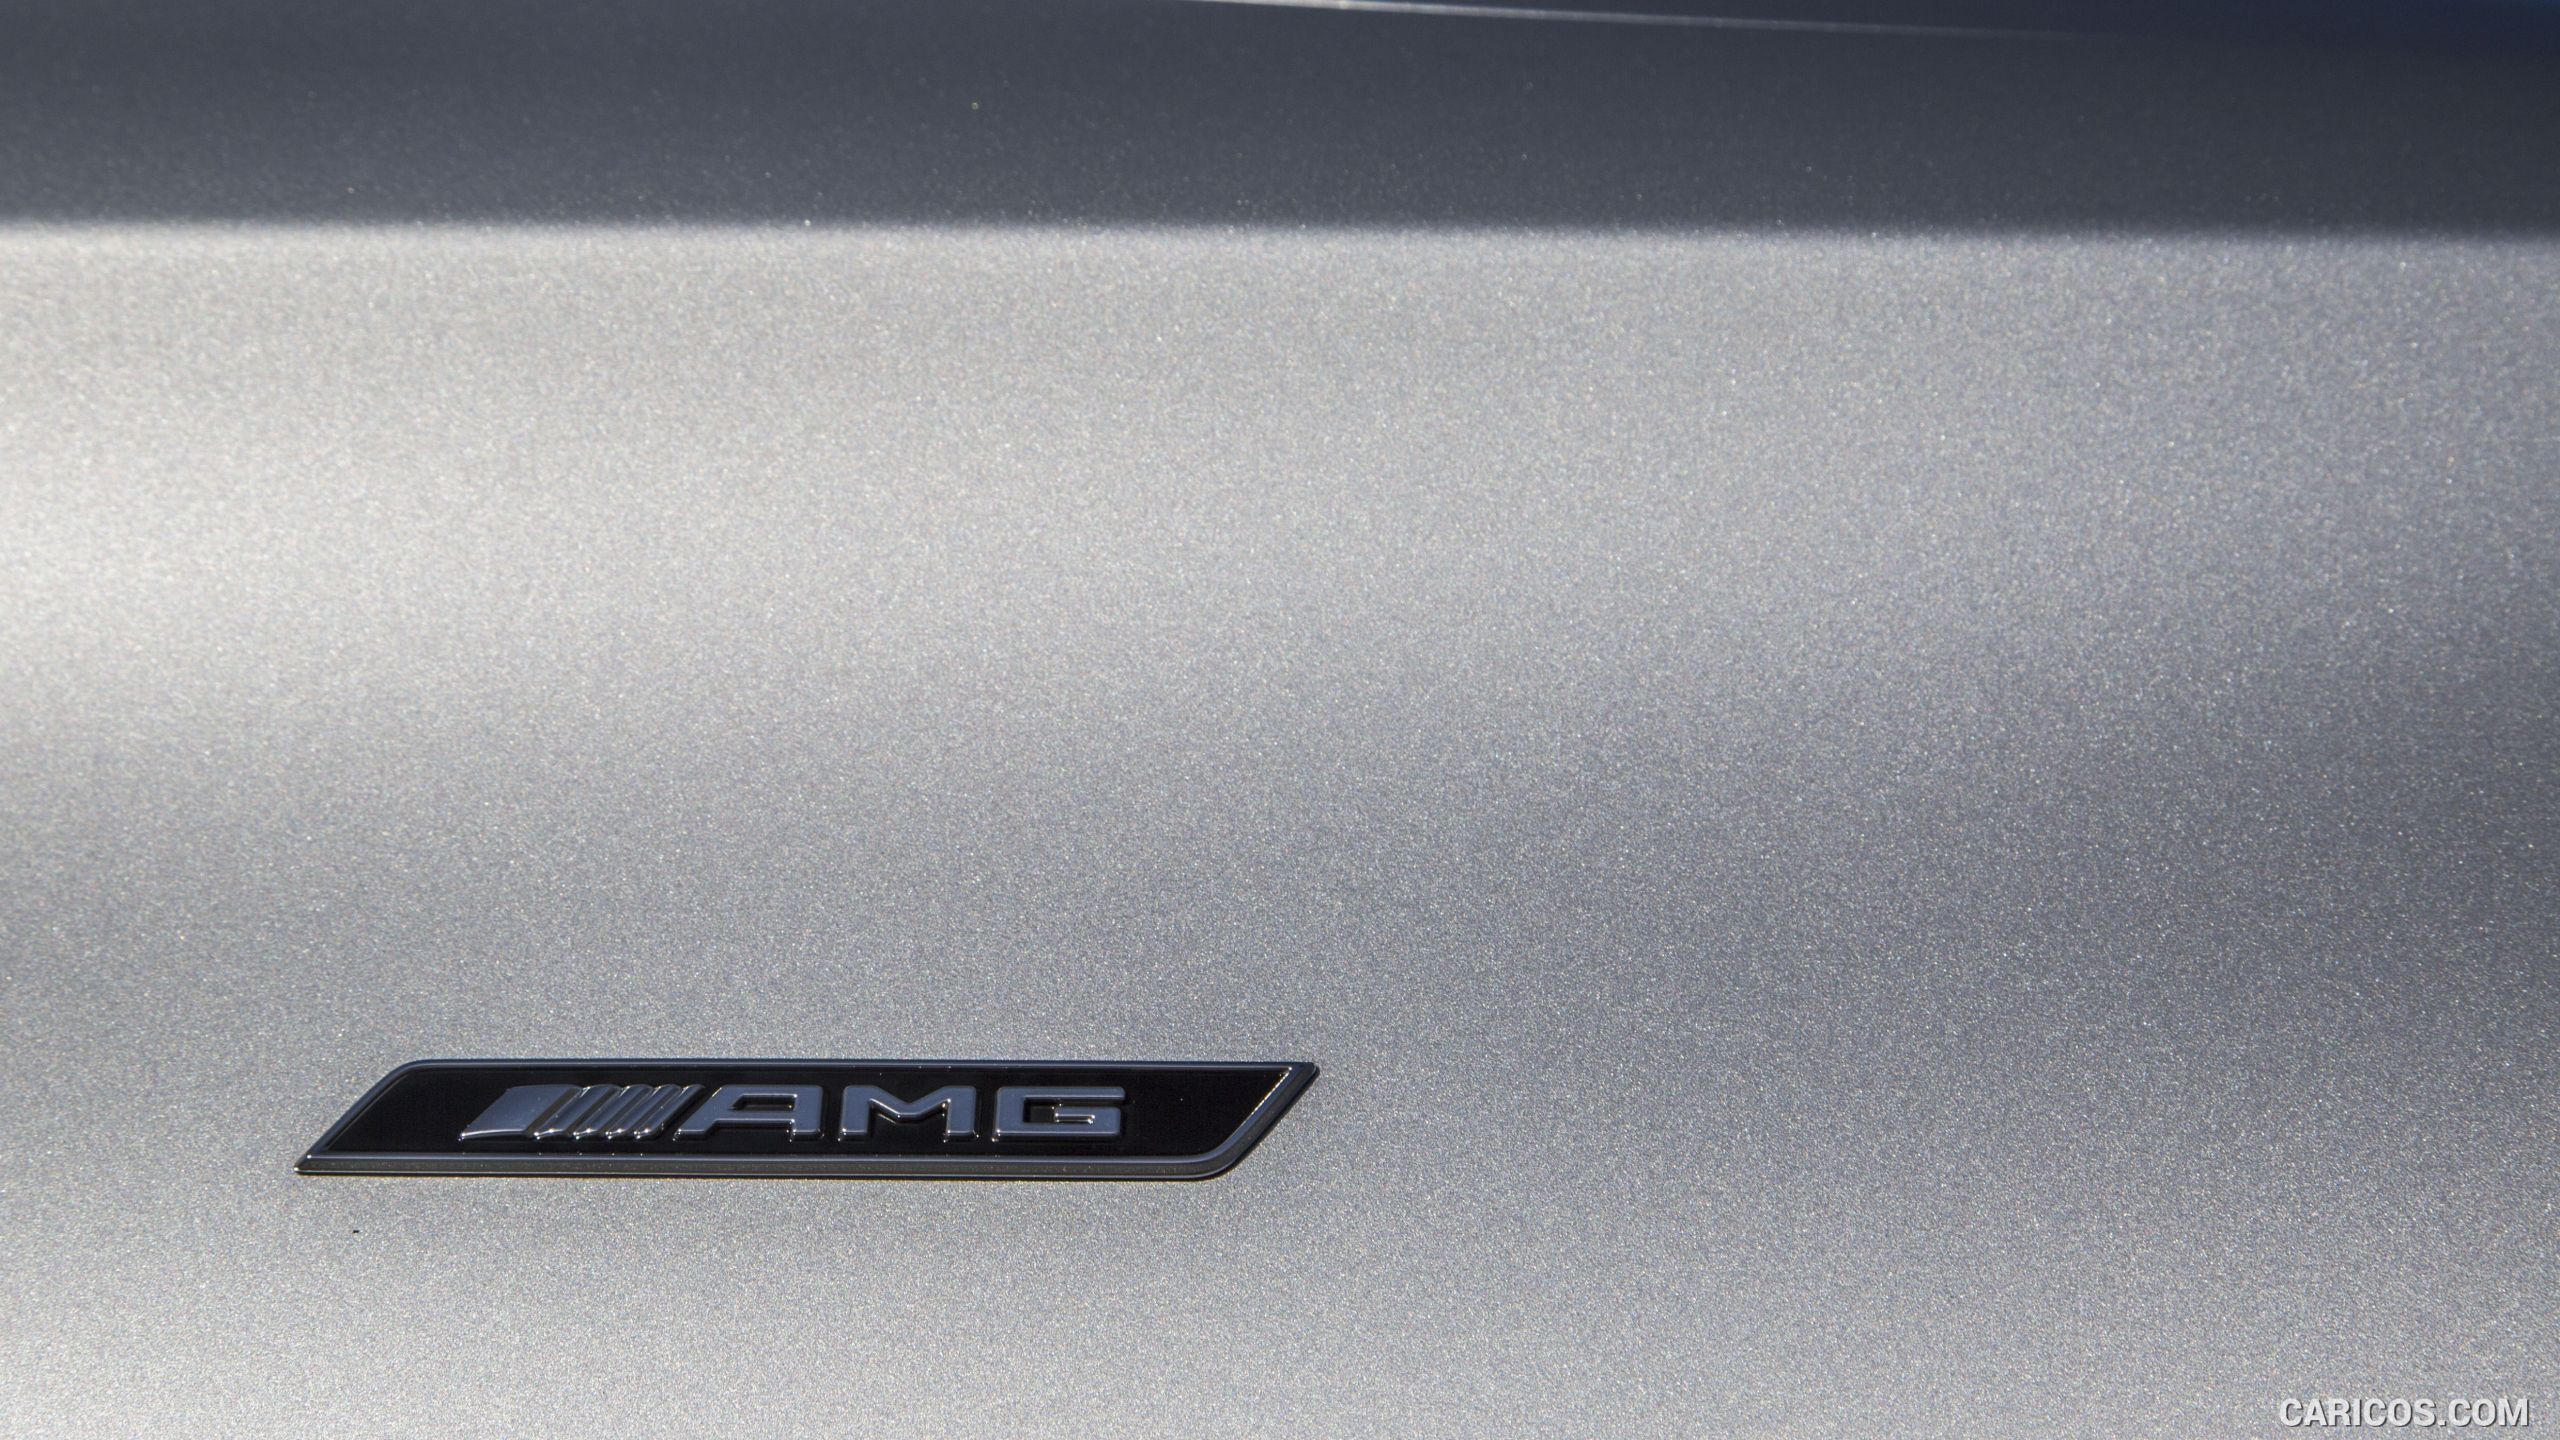 2016 Mercedes-Benz C450 AMG Sedan (US-Spec) - Badge, #91 of 122